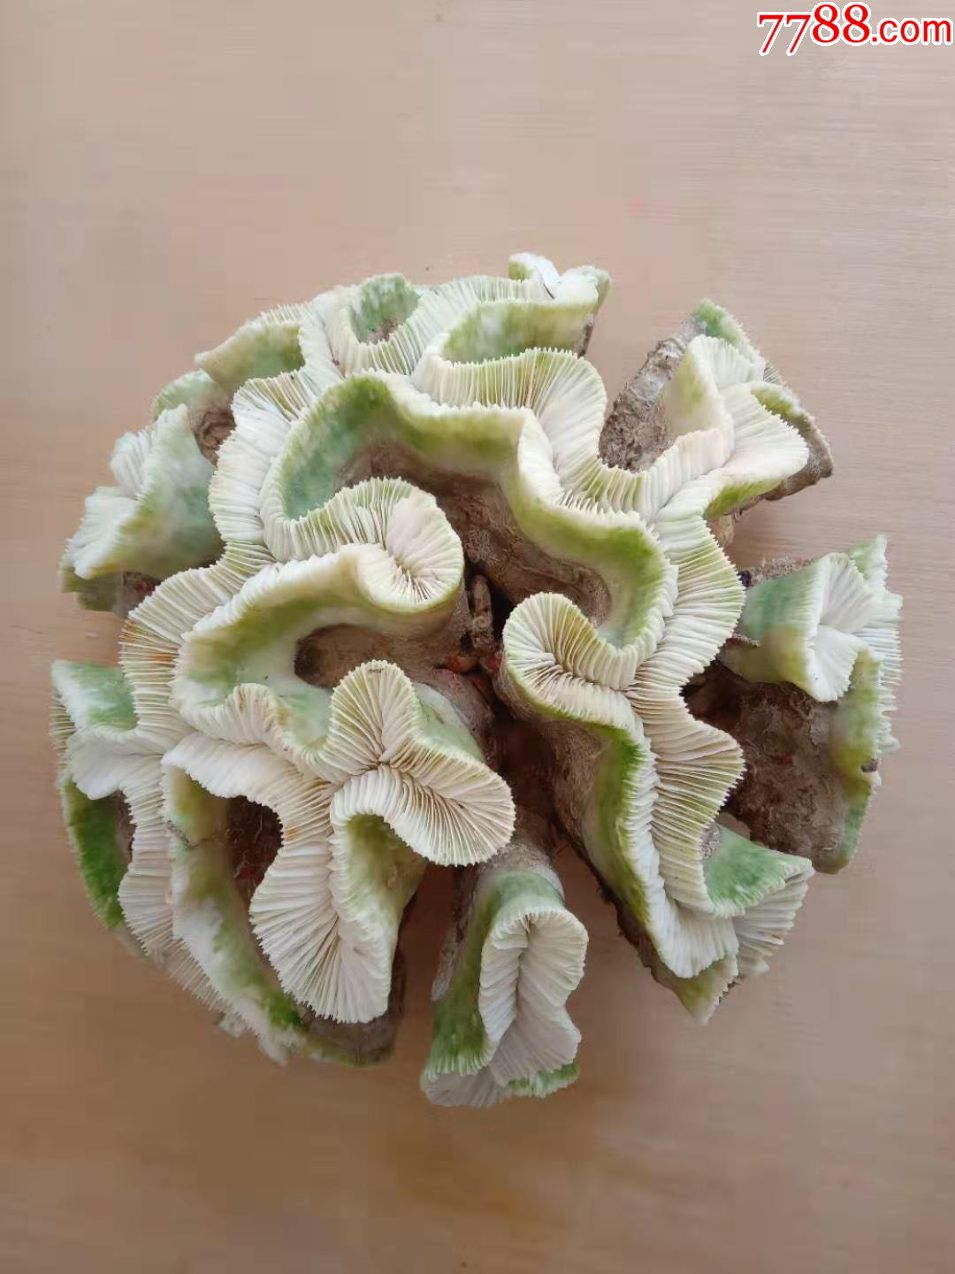 缅甸天然绿珊瑚,非常有特色呈半球状,形状好,完美,2.5公斤